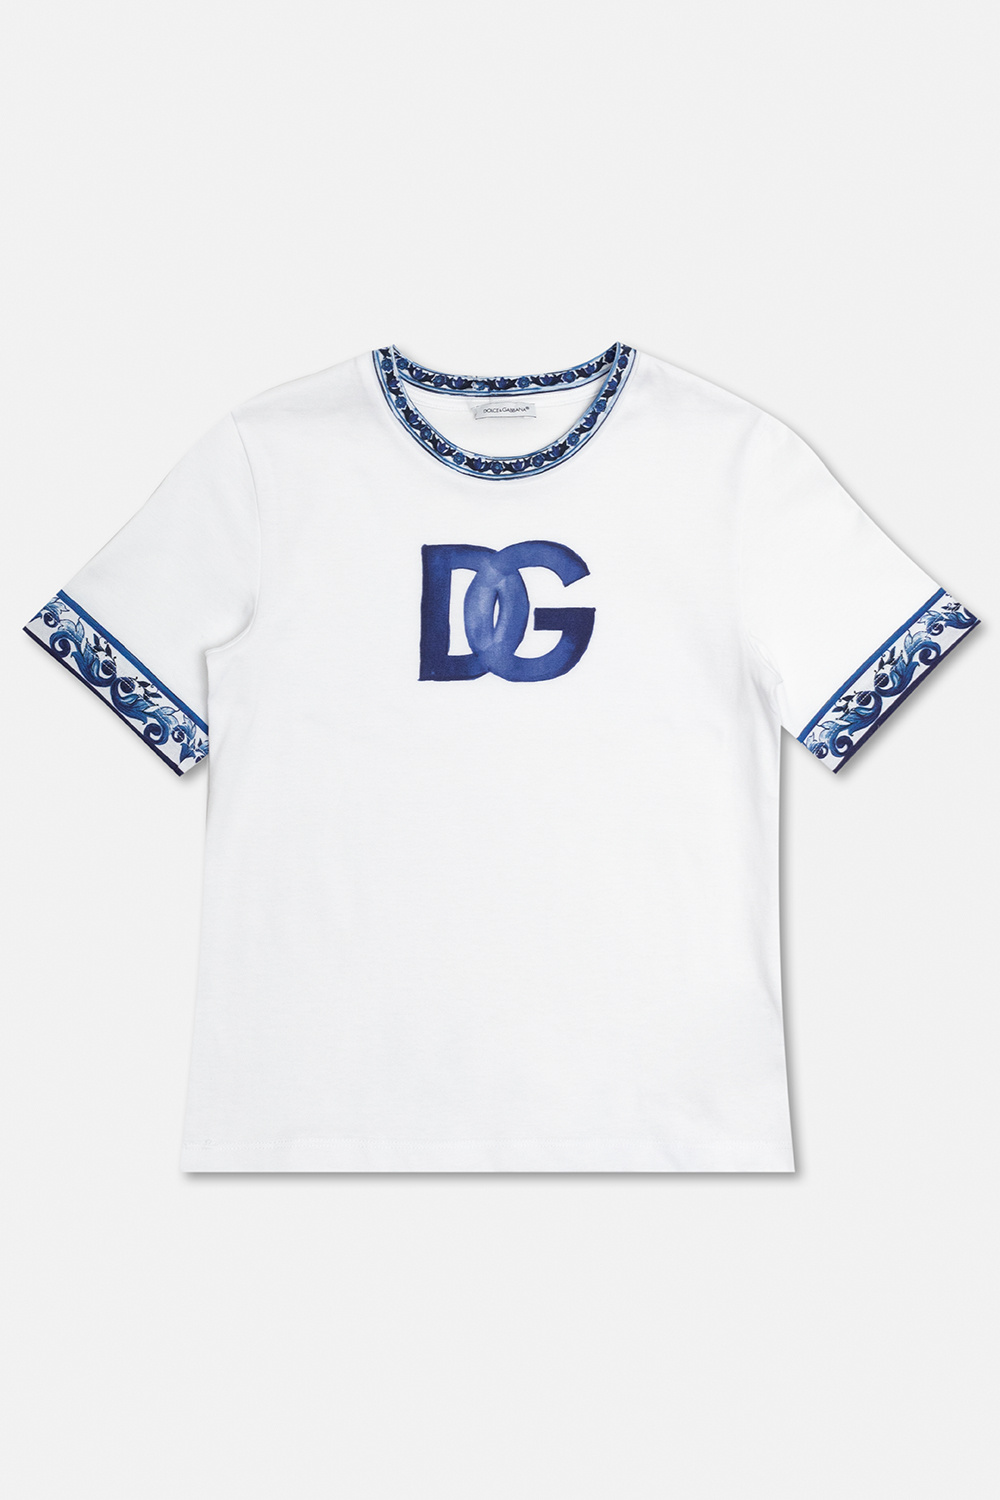 Dolce & Gabbana Kids Dolce & Gabbana pussy bow DG logo jacquard shirt